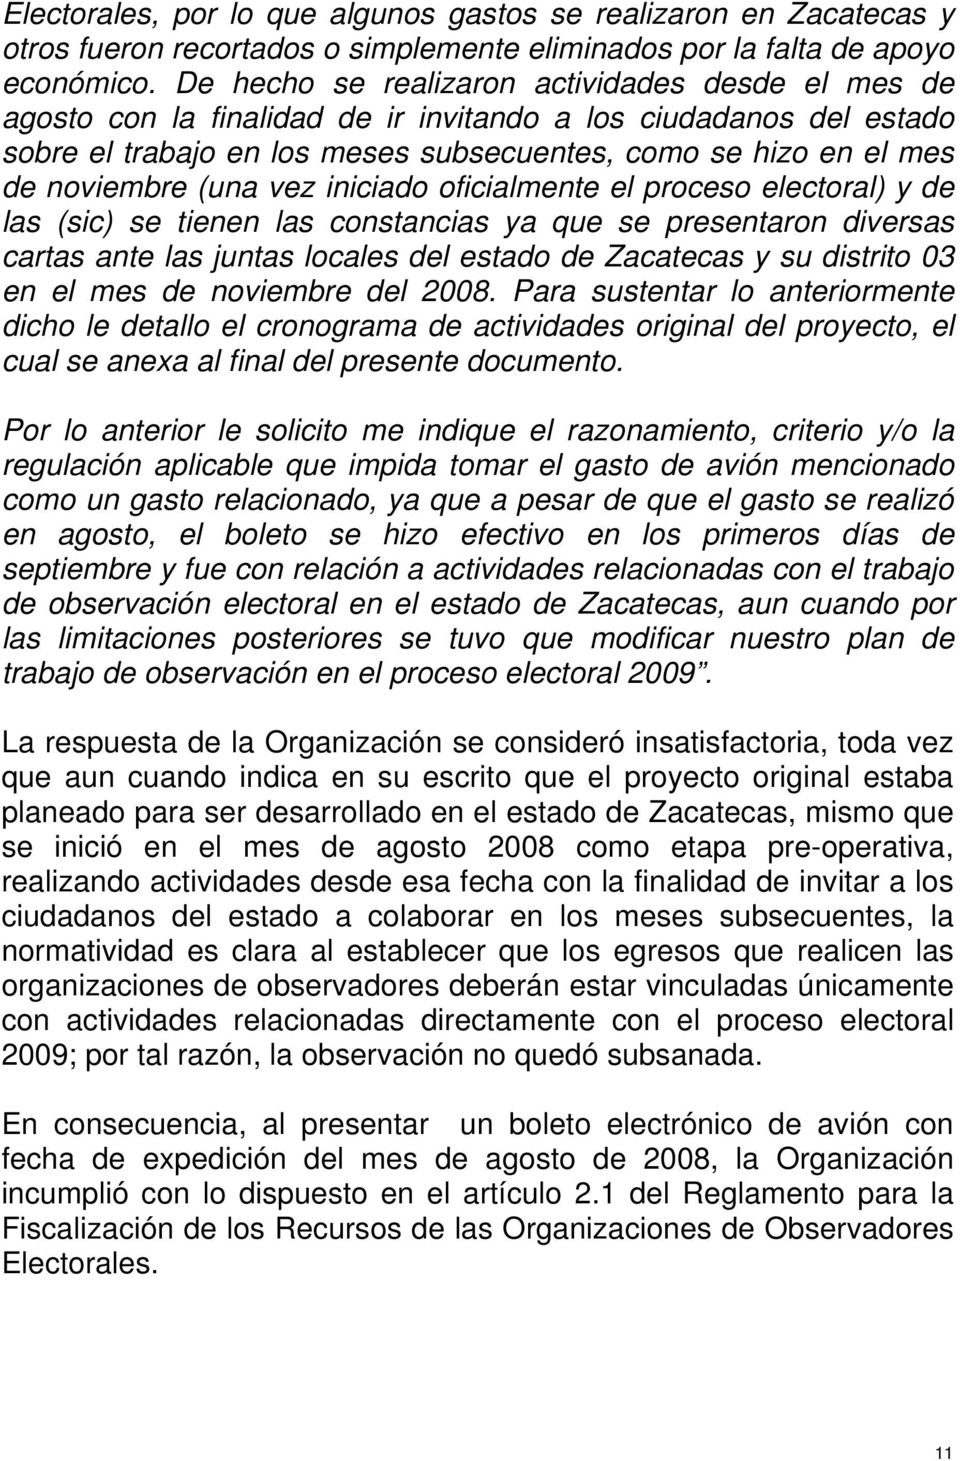 (una vez iniciado oficialmente el proceso electoral) y de las (sic) se tienen las constancias ya que se presentaron diversas cartas ante las juntas locales del estado de Zacatecas y su distrito 03 en